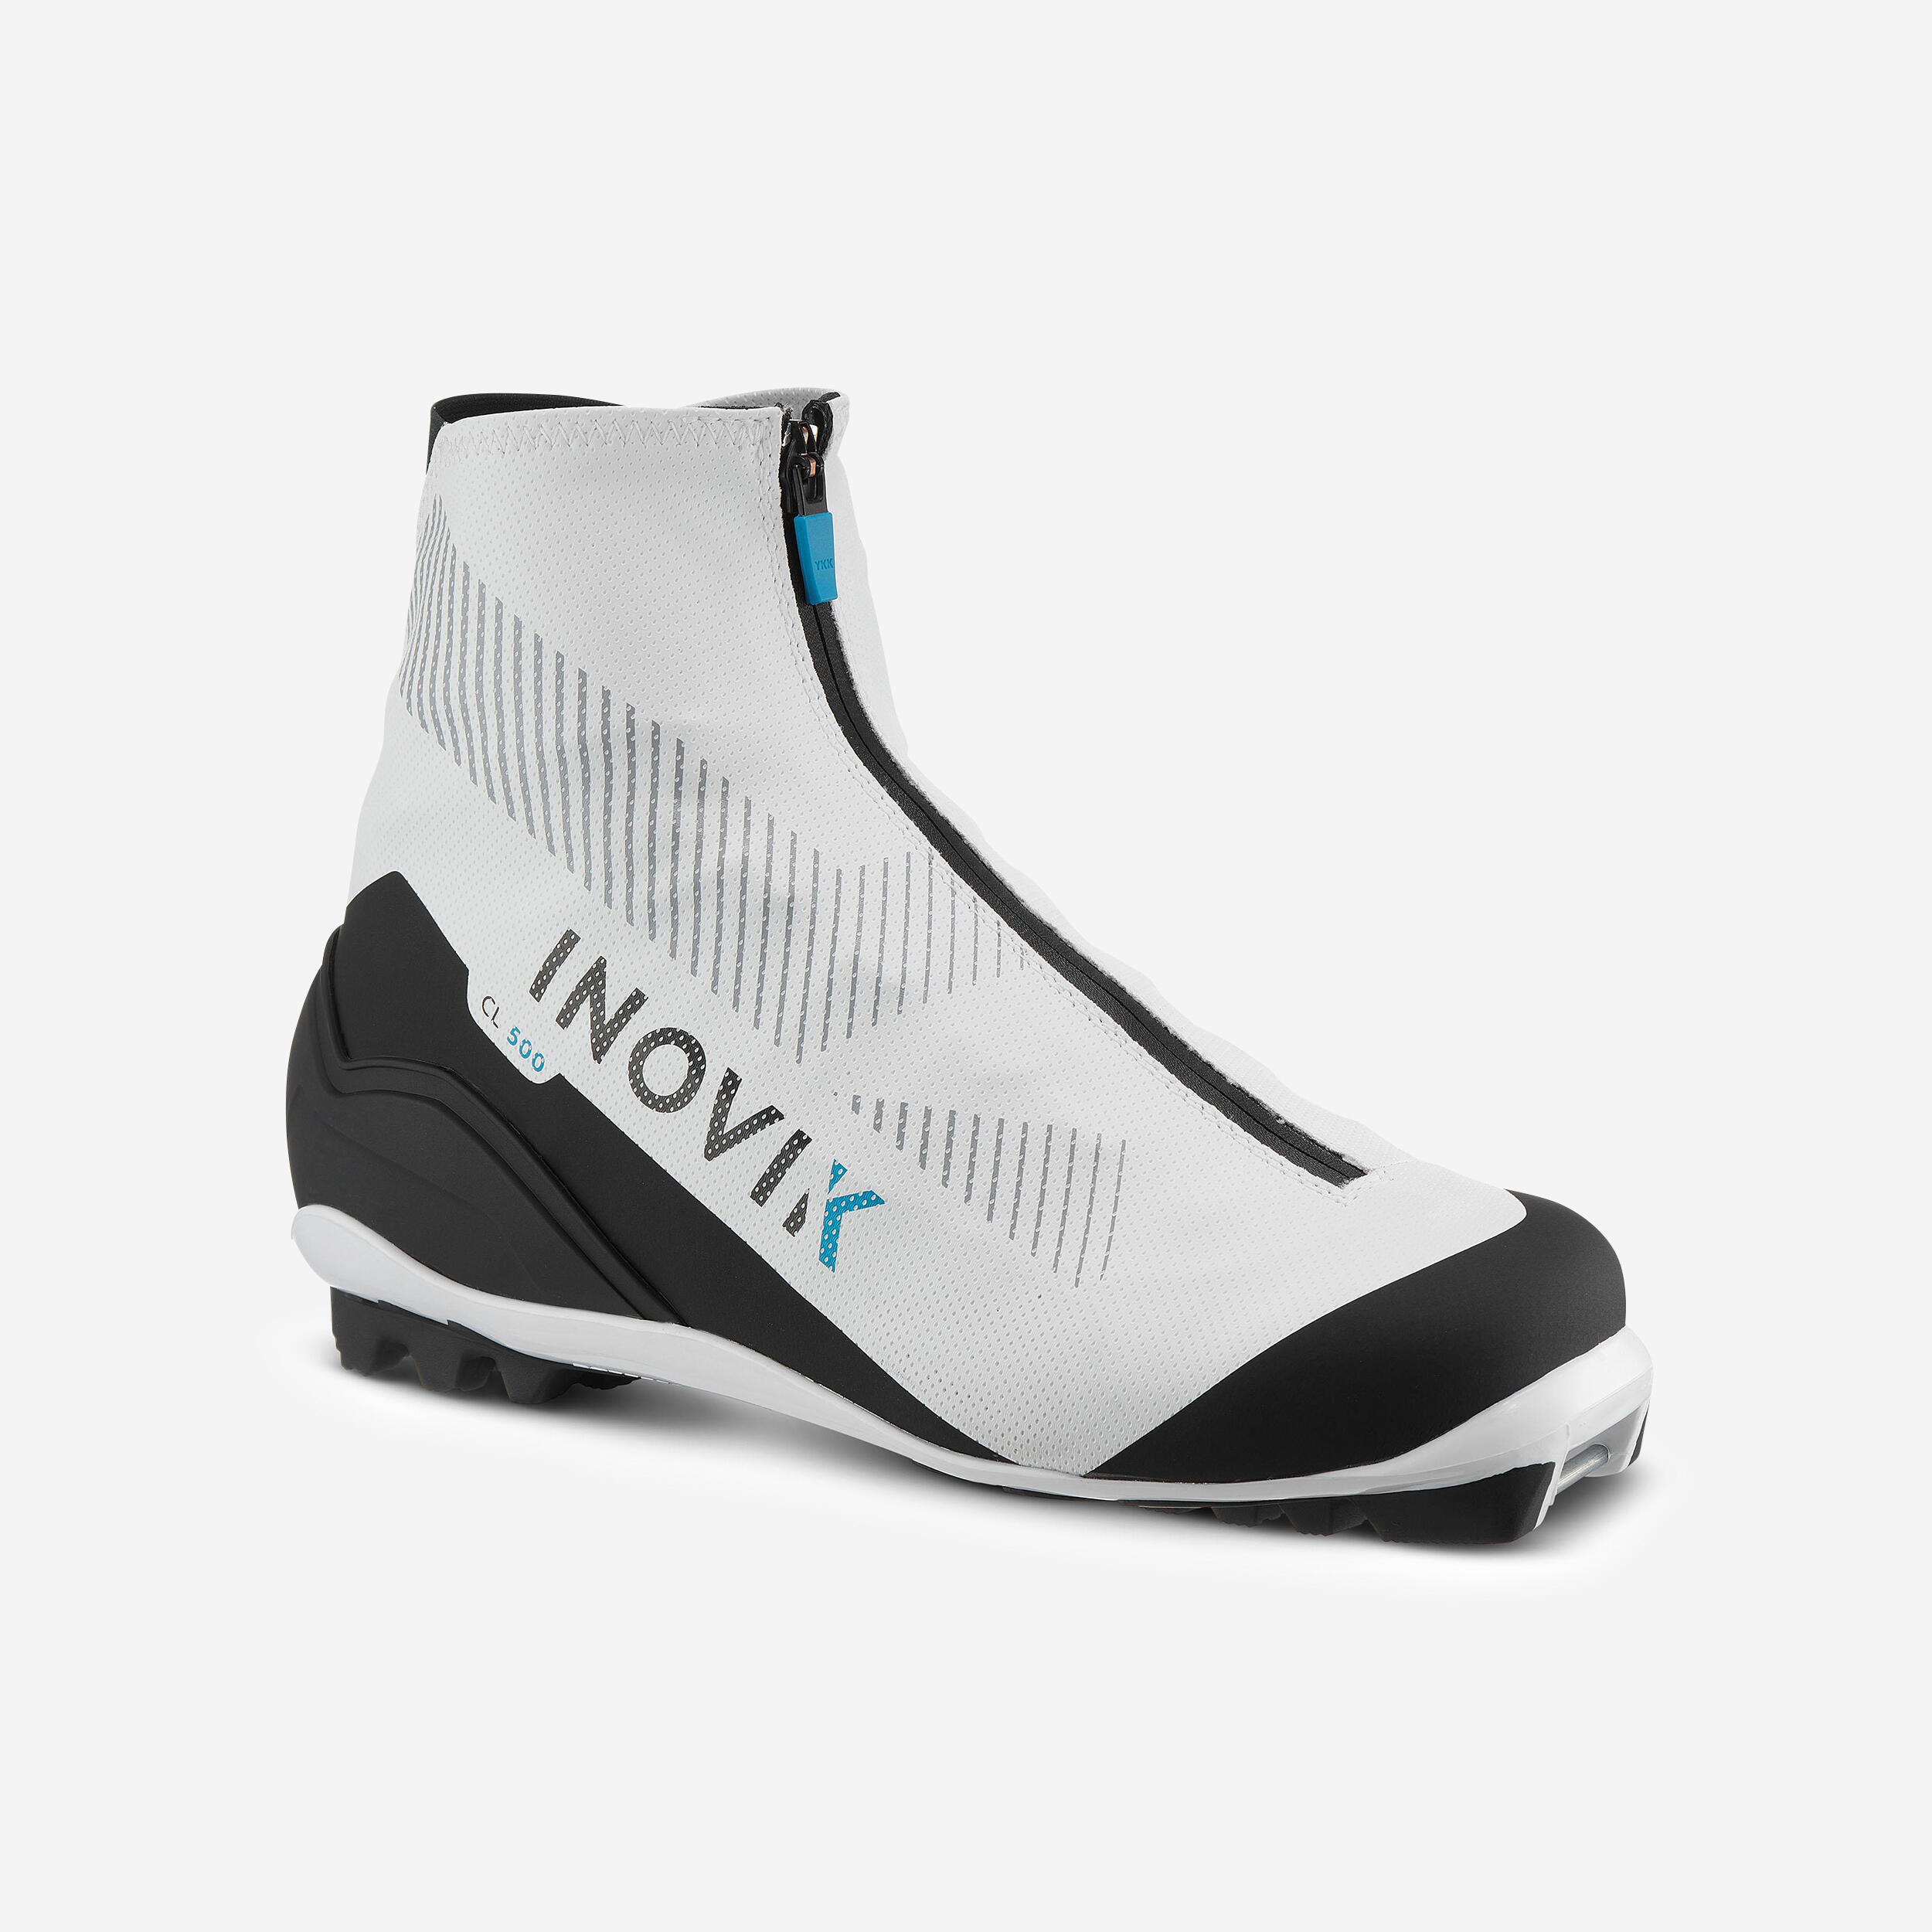 INOVIK Women’s Classic Cross-country Ski Boots XC S BOOT 500 - White